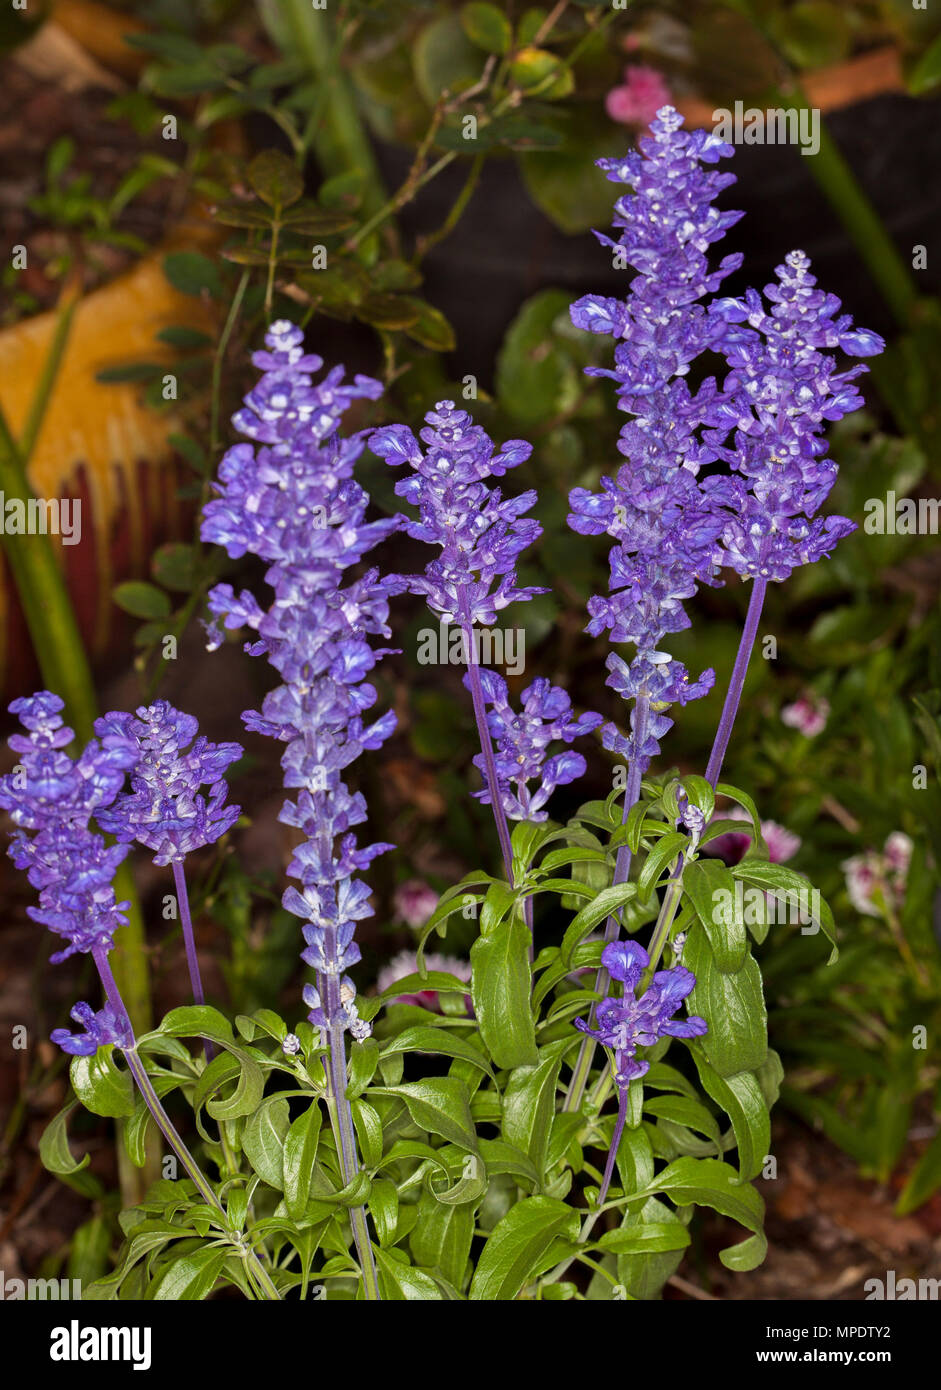 Spikes der tiefen blauen/violetten Blumen und grüne Blätter von Salvia farinacea allyfun', eine mehrjährige Pflanze auf dunklem Hintergrund Stockfoto